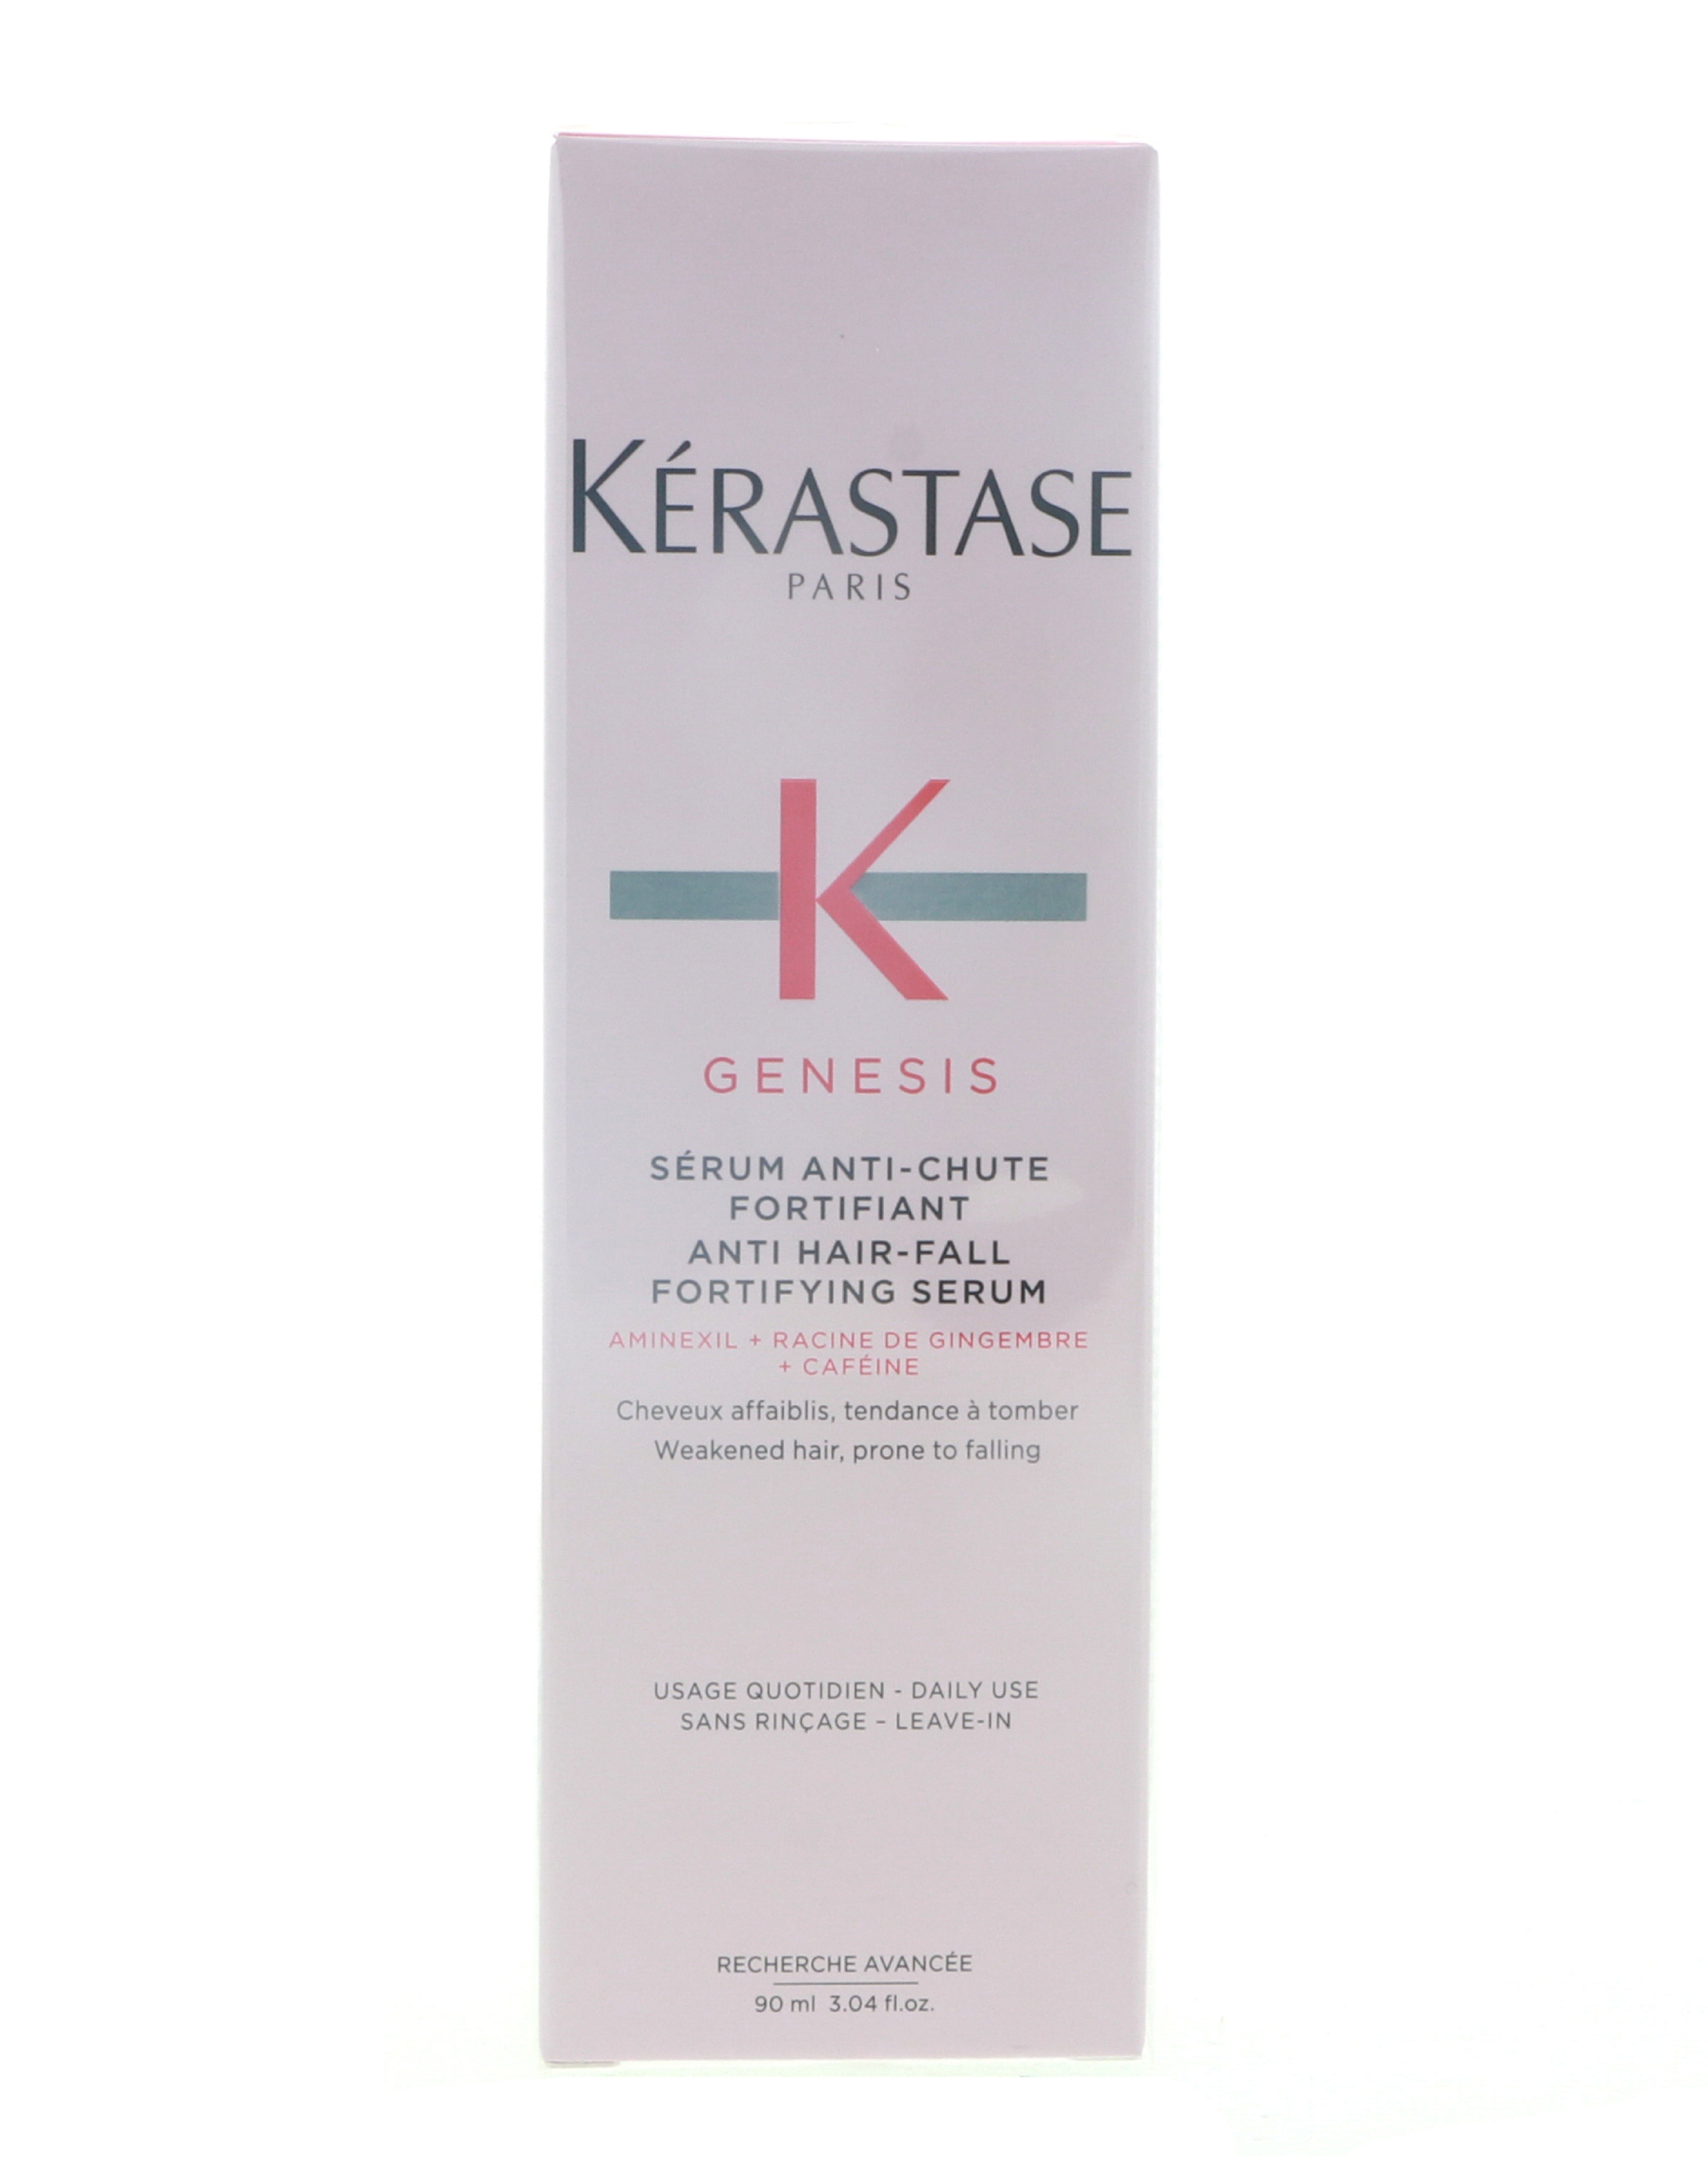 Kerastase Genesis Anti Hair-Fall Fortifying Serum,  oz 